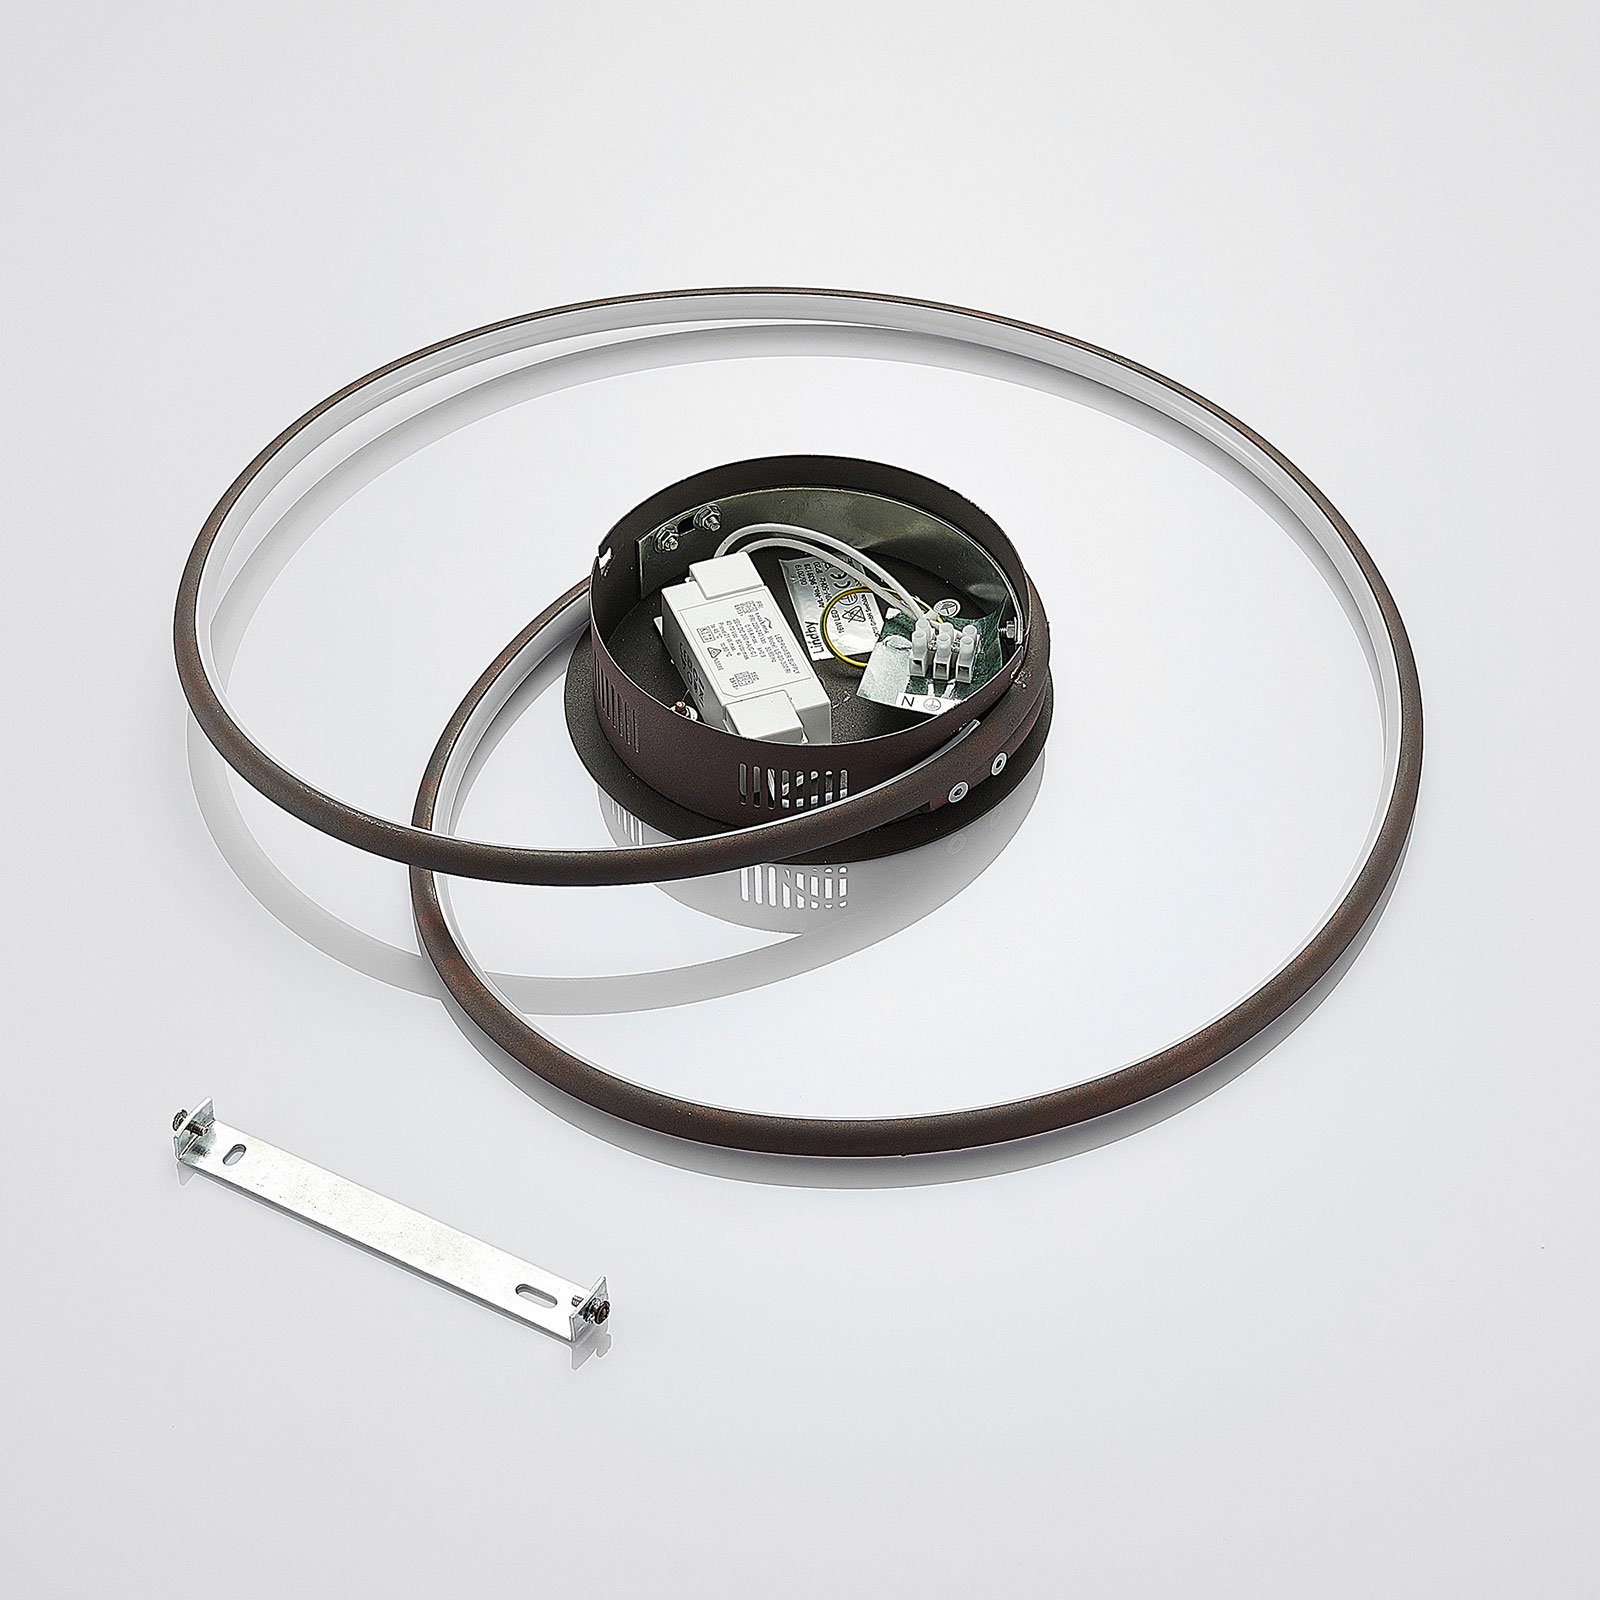 Lindby Joline LED-Deckenleuchte, rost, 45 cm